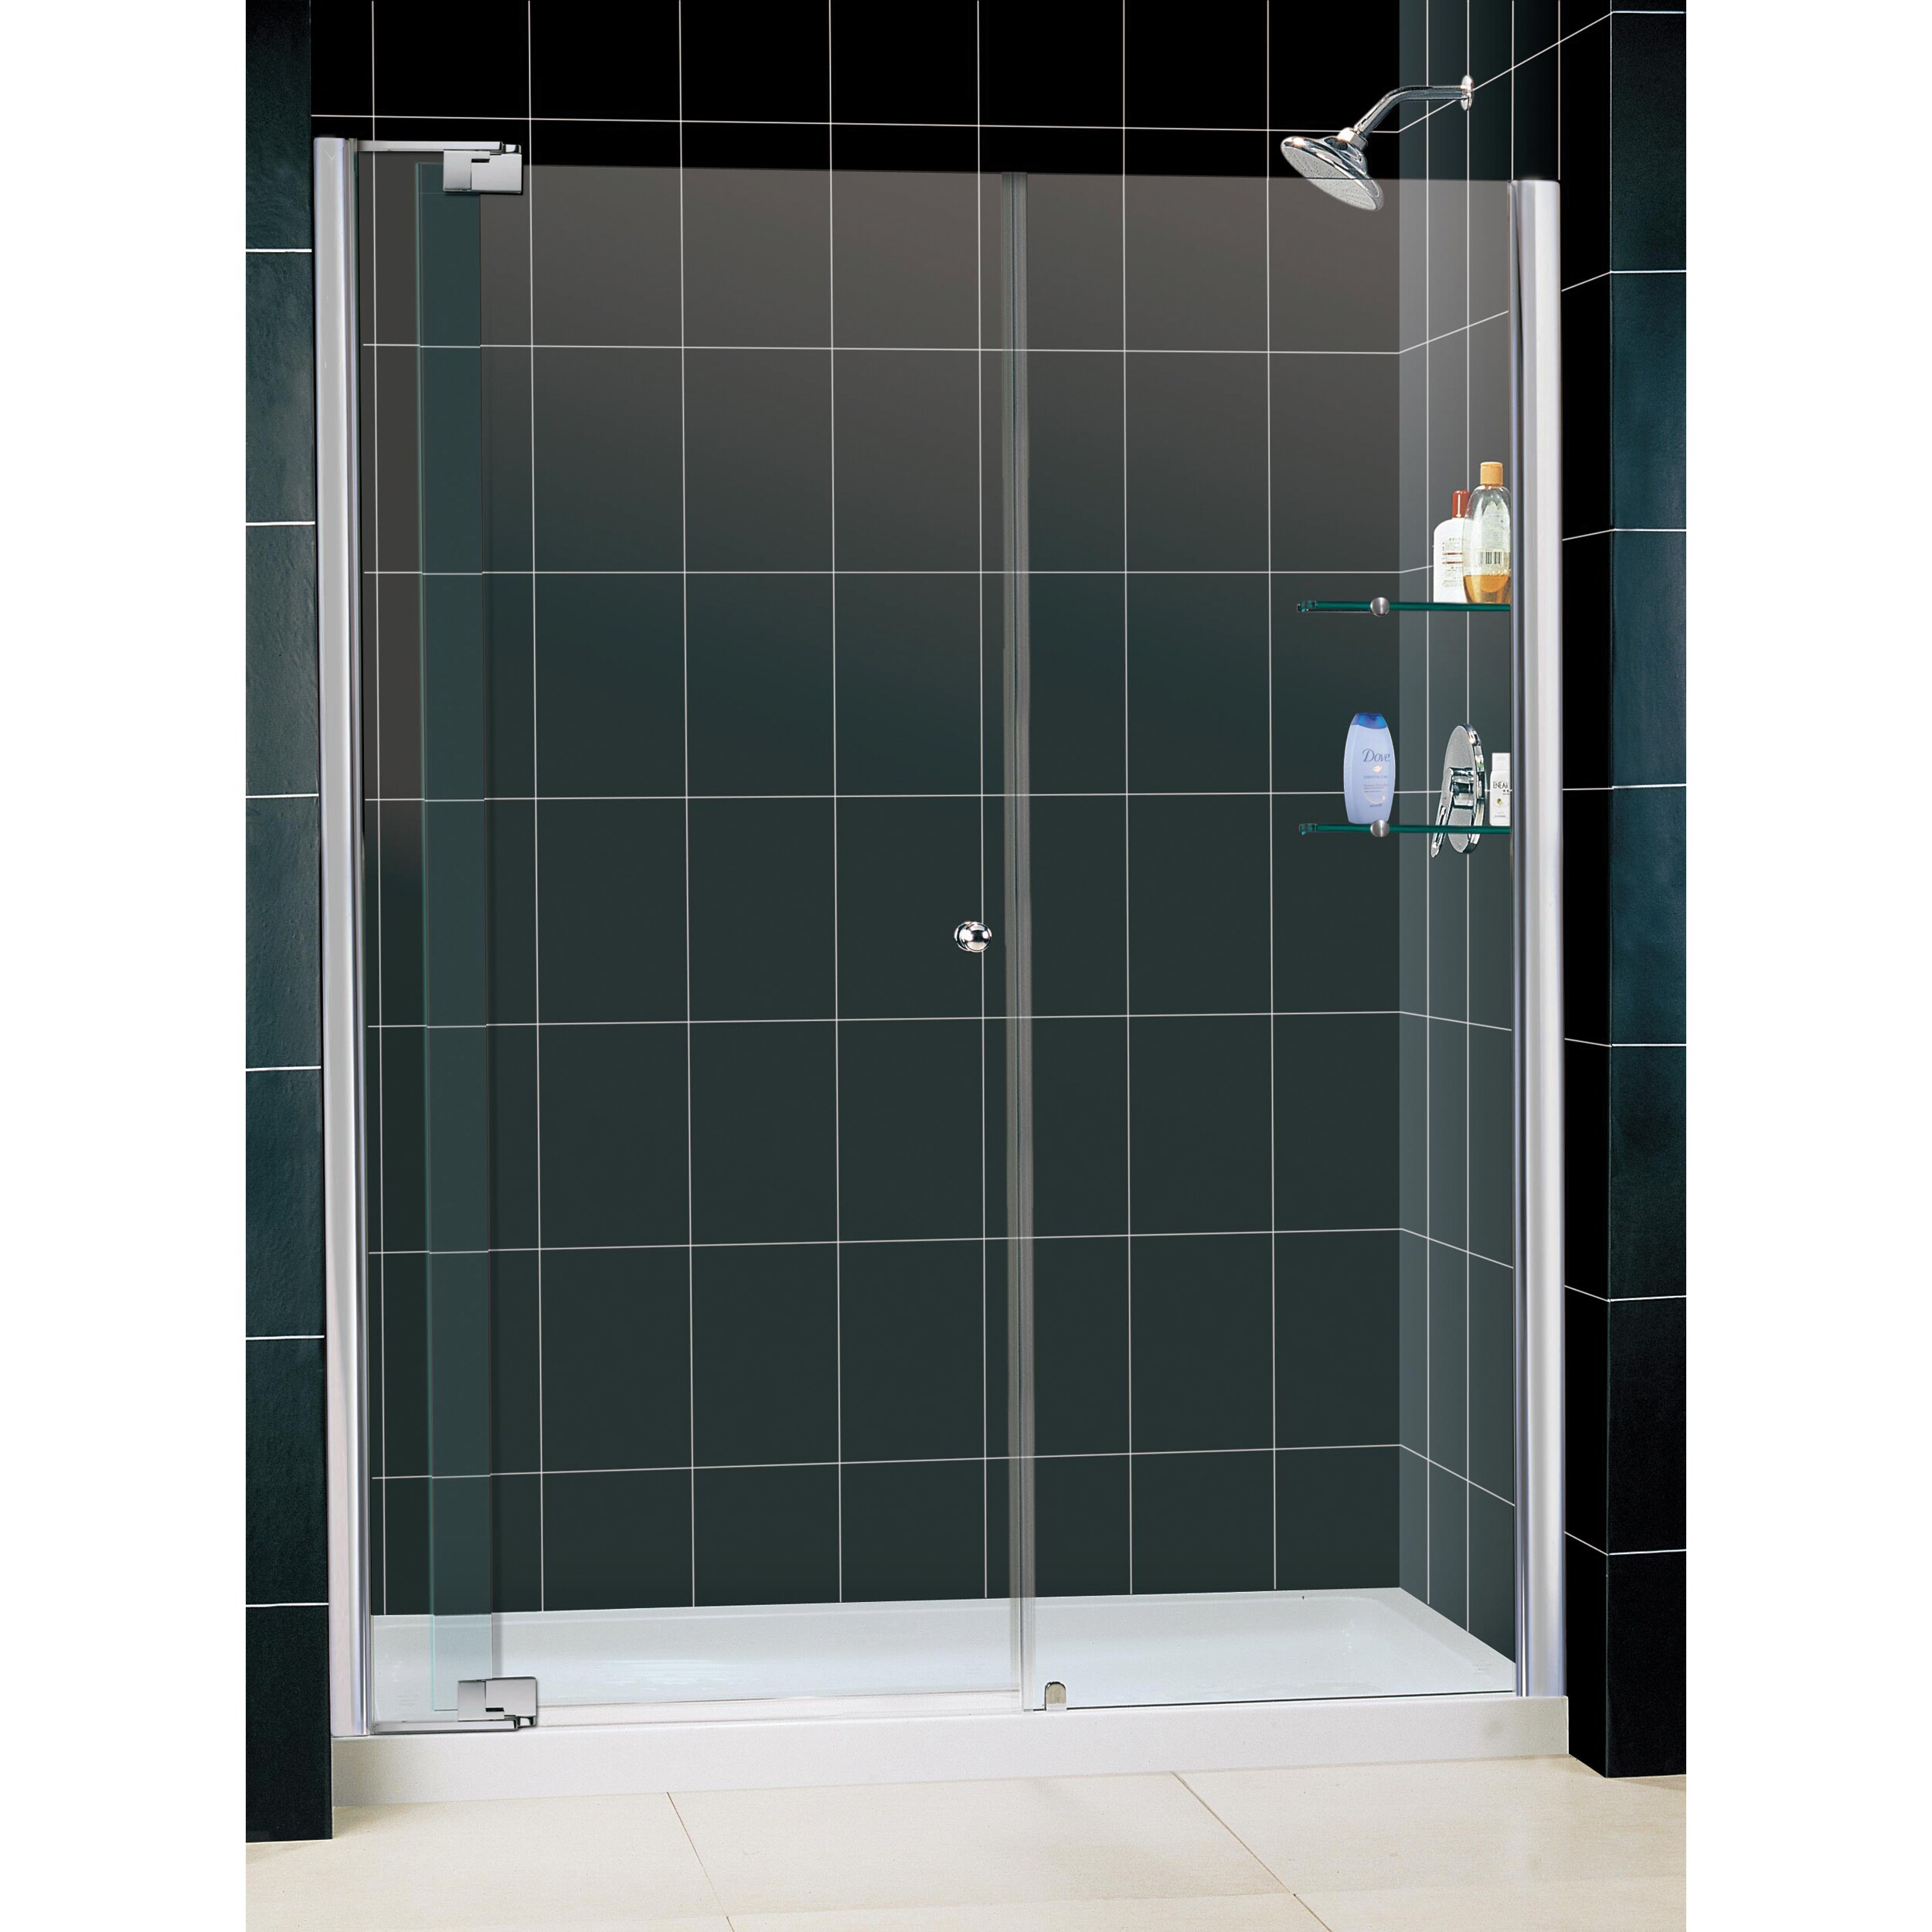 Dreamline Allure Frameless Pivot Shower Door And 32x60 inch Base